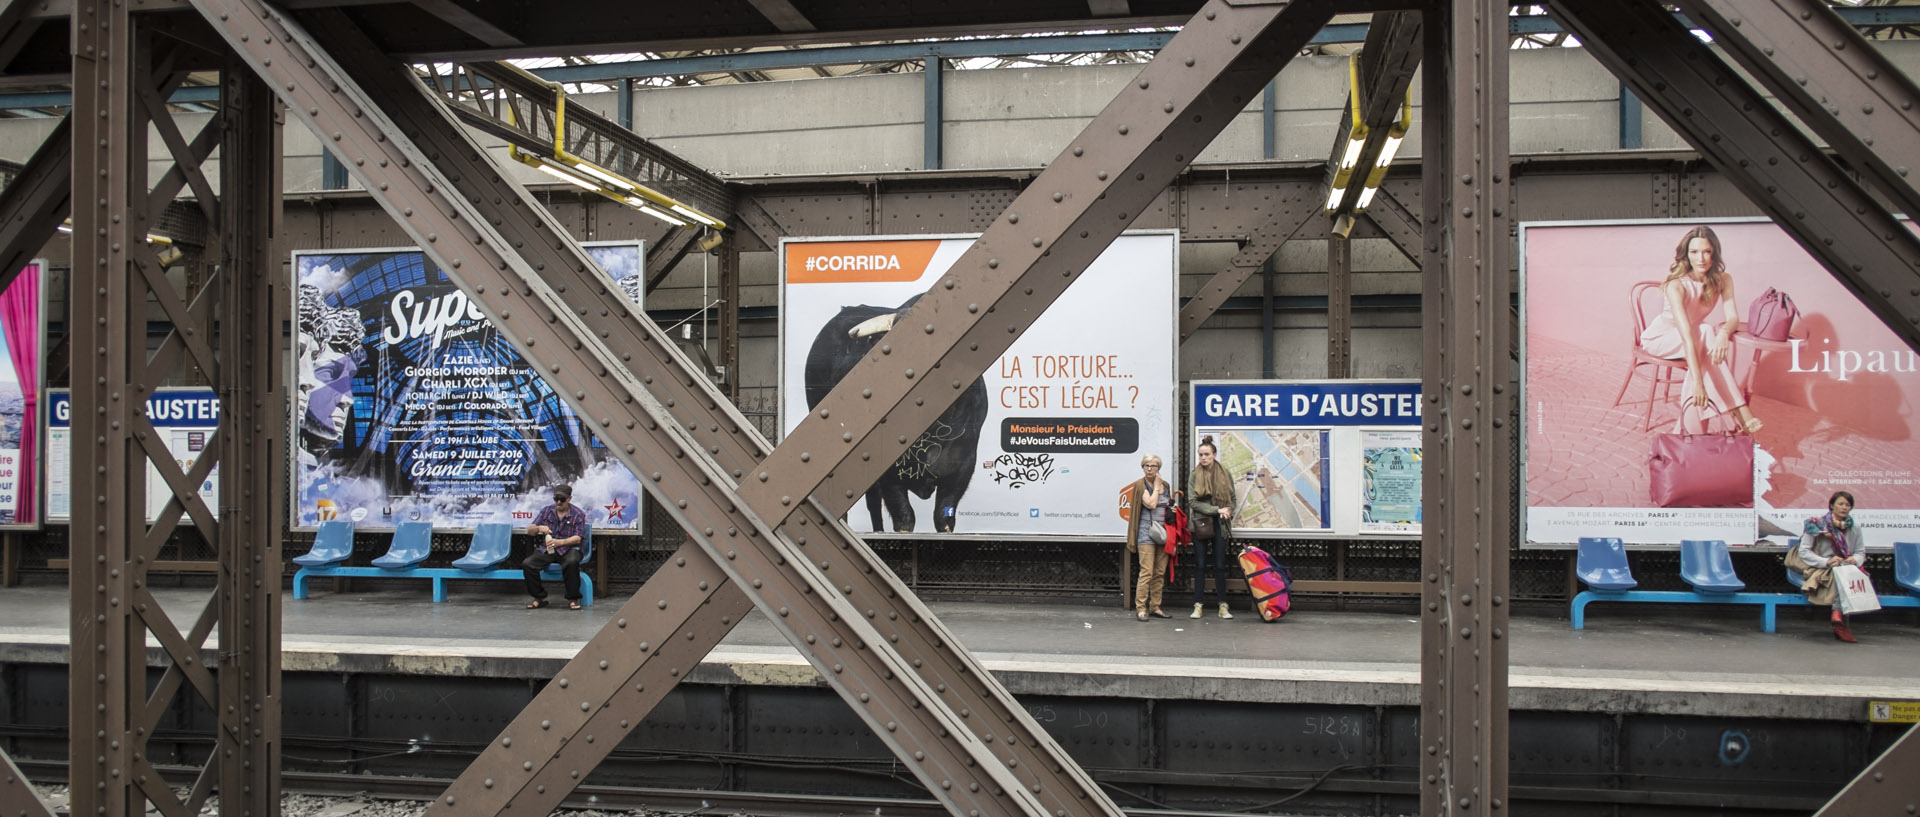 Lundi 9 mai 2016, 14:22, gare d'Austerlitz, Paris